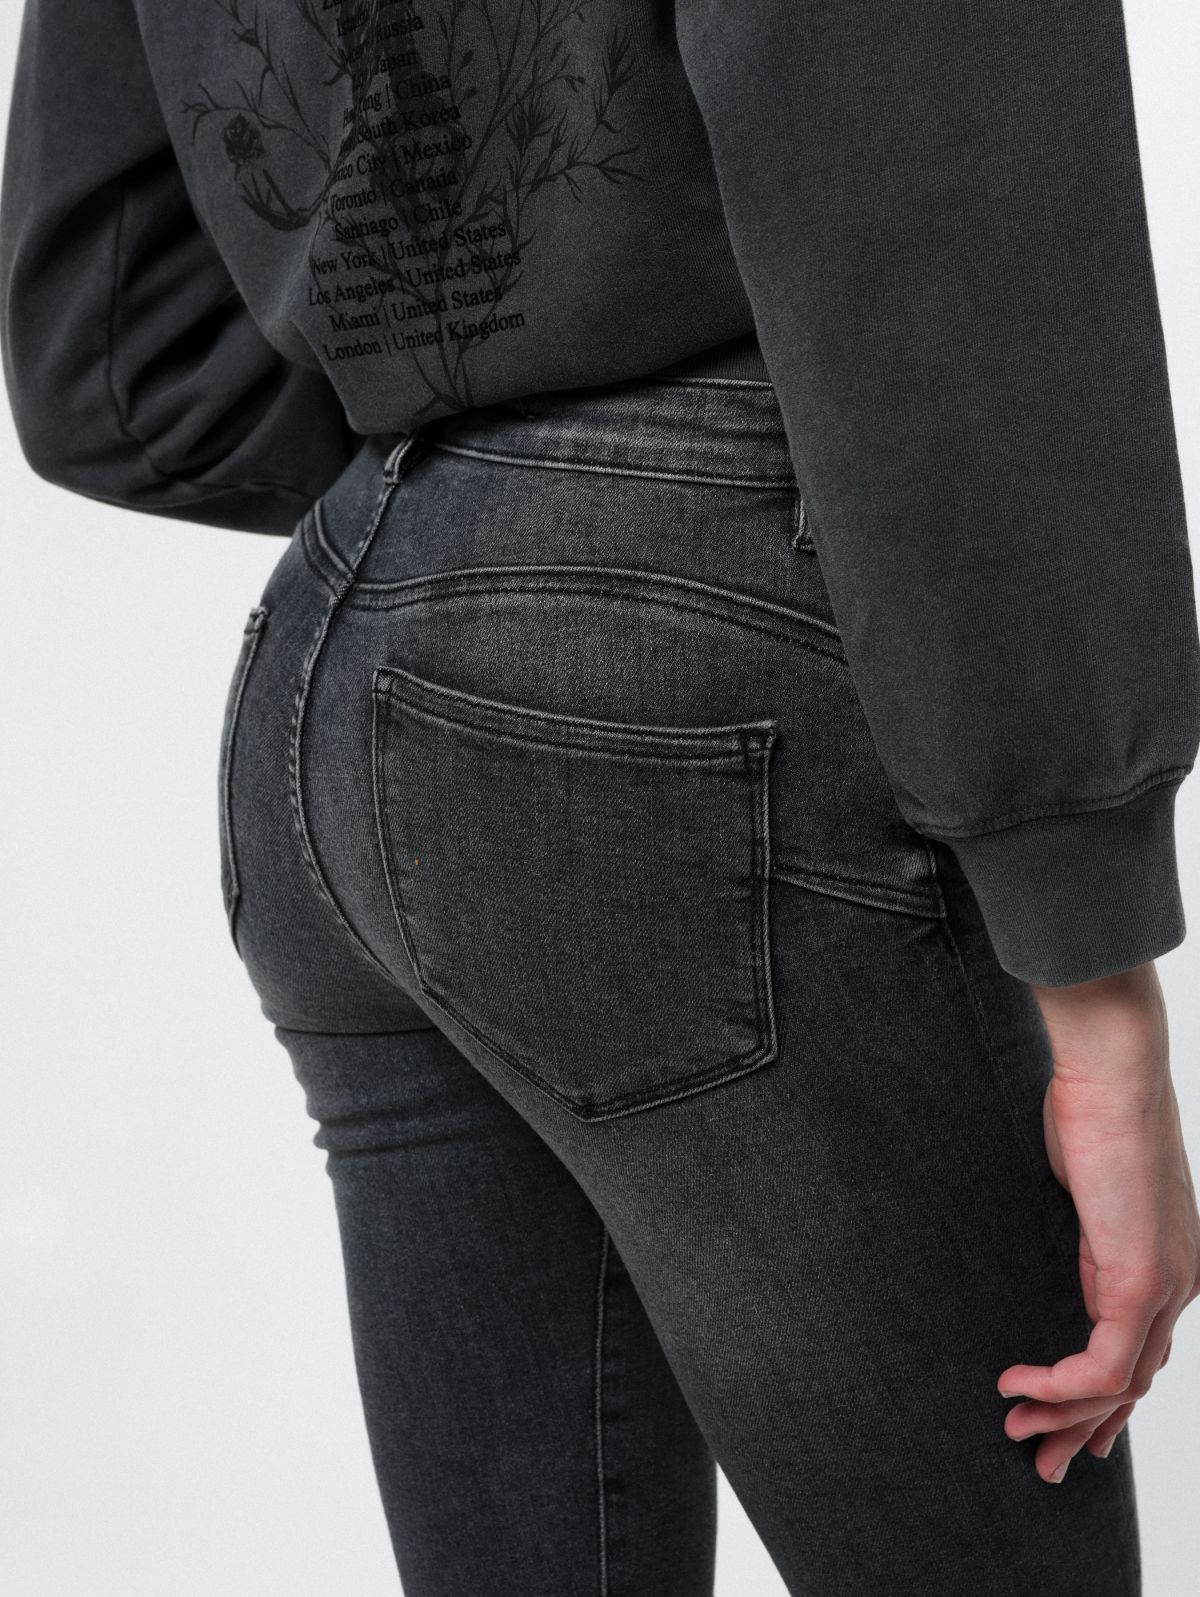  ג'ינס בגזרת סקיני עם סיומת גזורה של ALL SAINTS